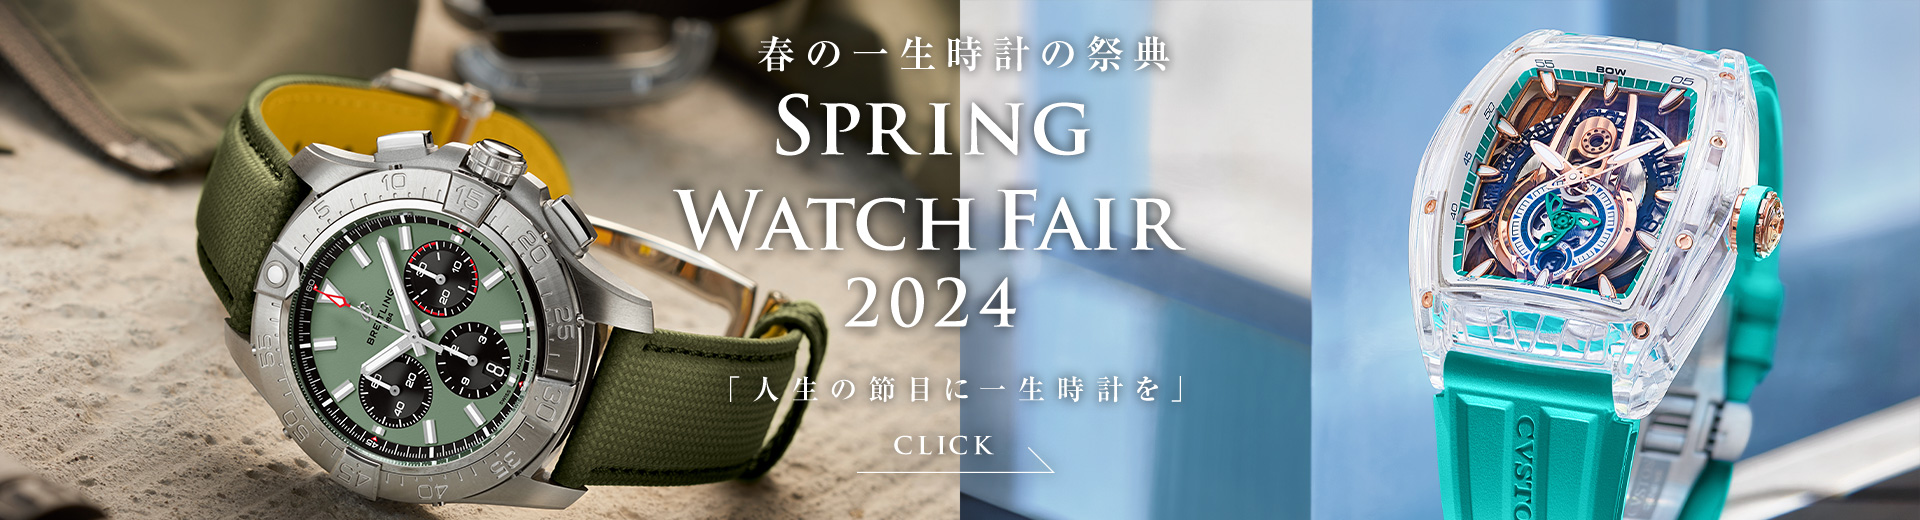 Spring Watch Fair 2024